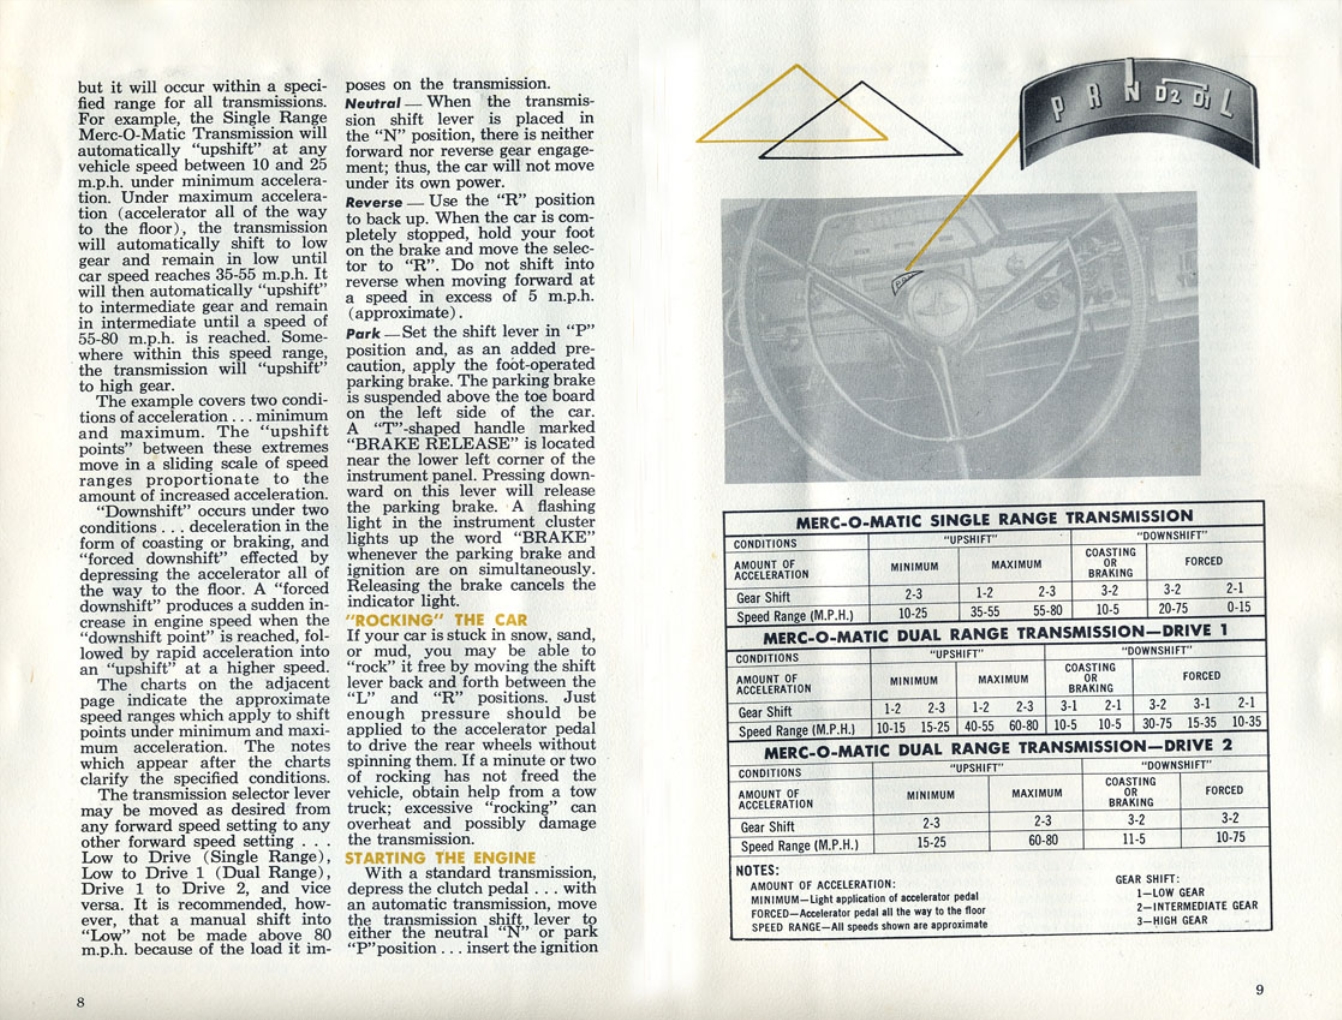 n_1960 Mercury Manual-08-09.jpg